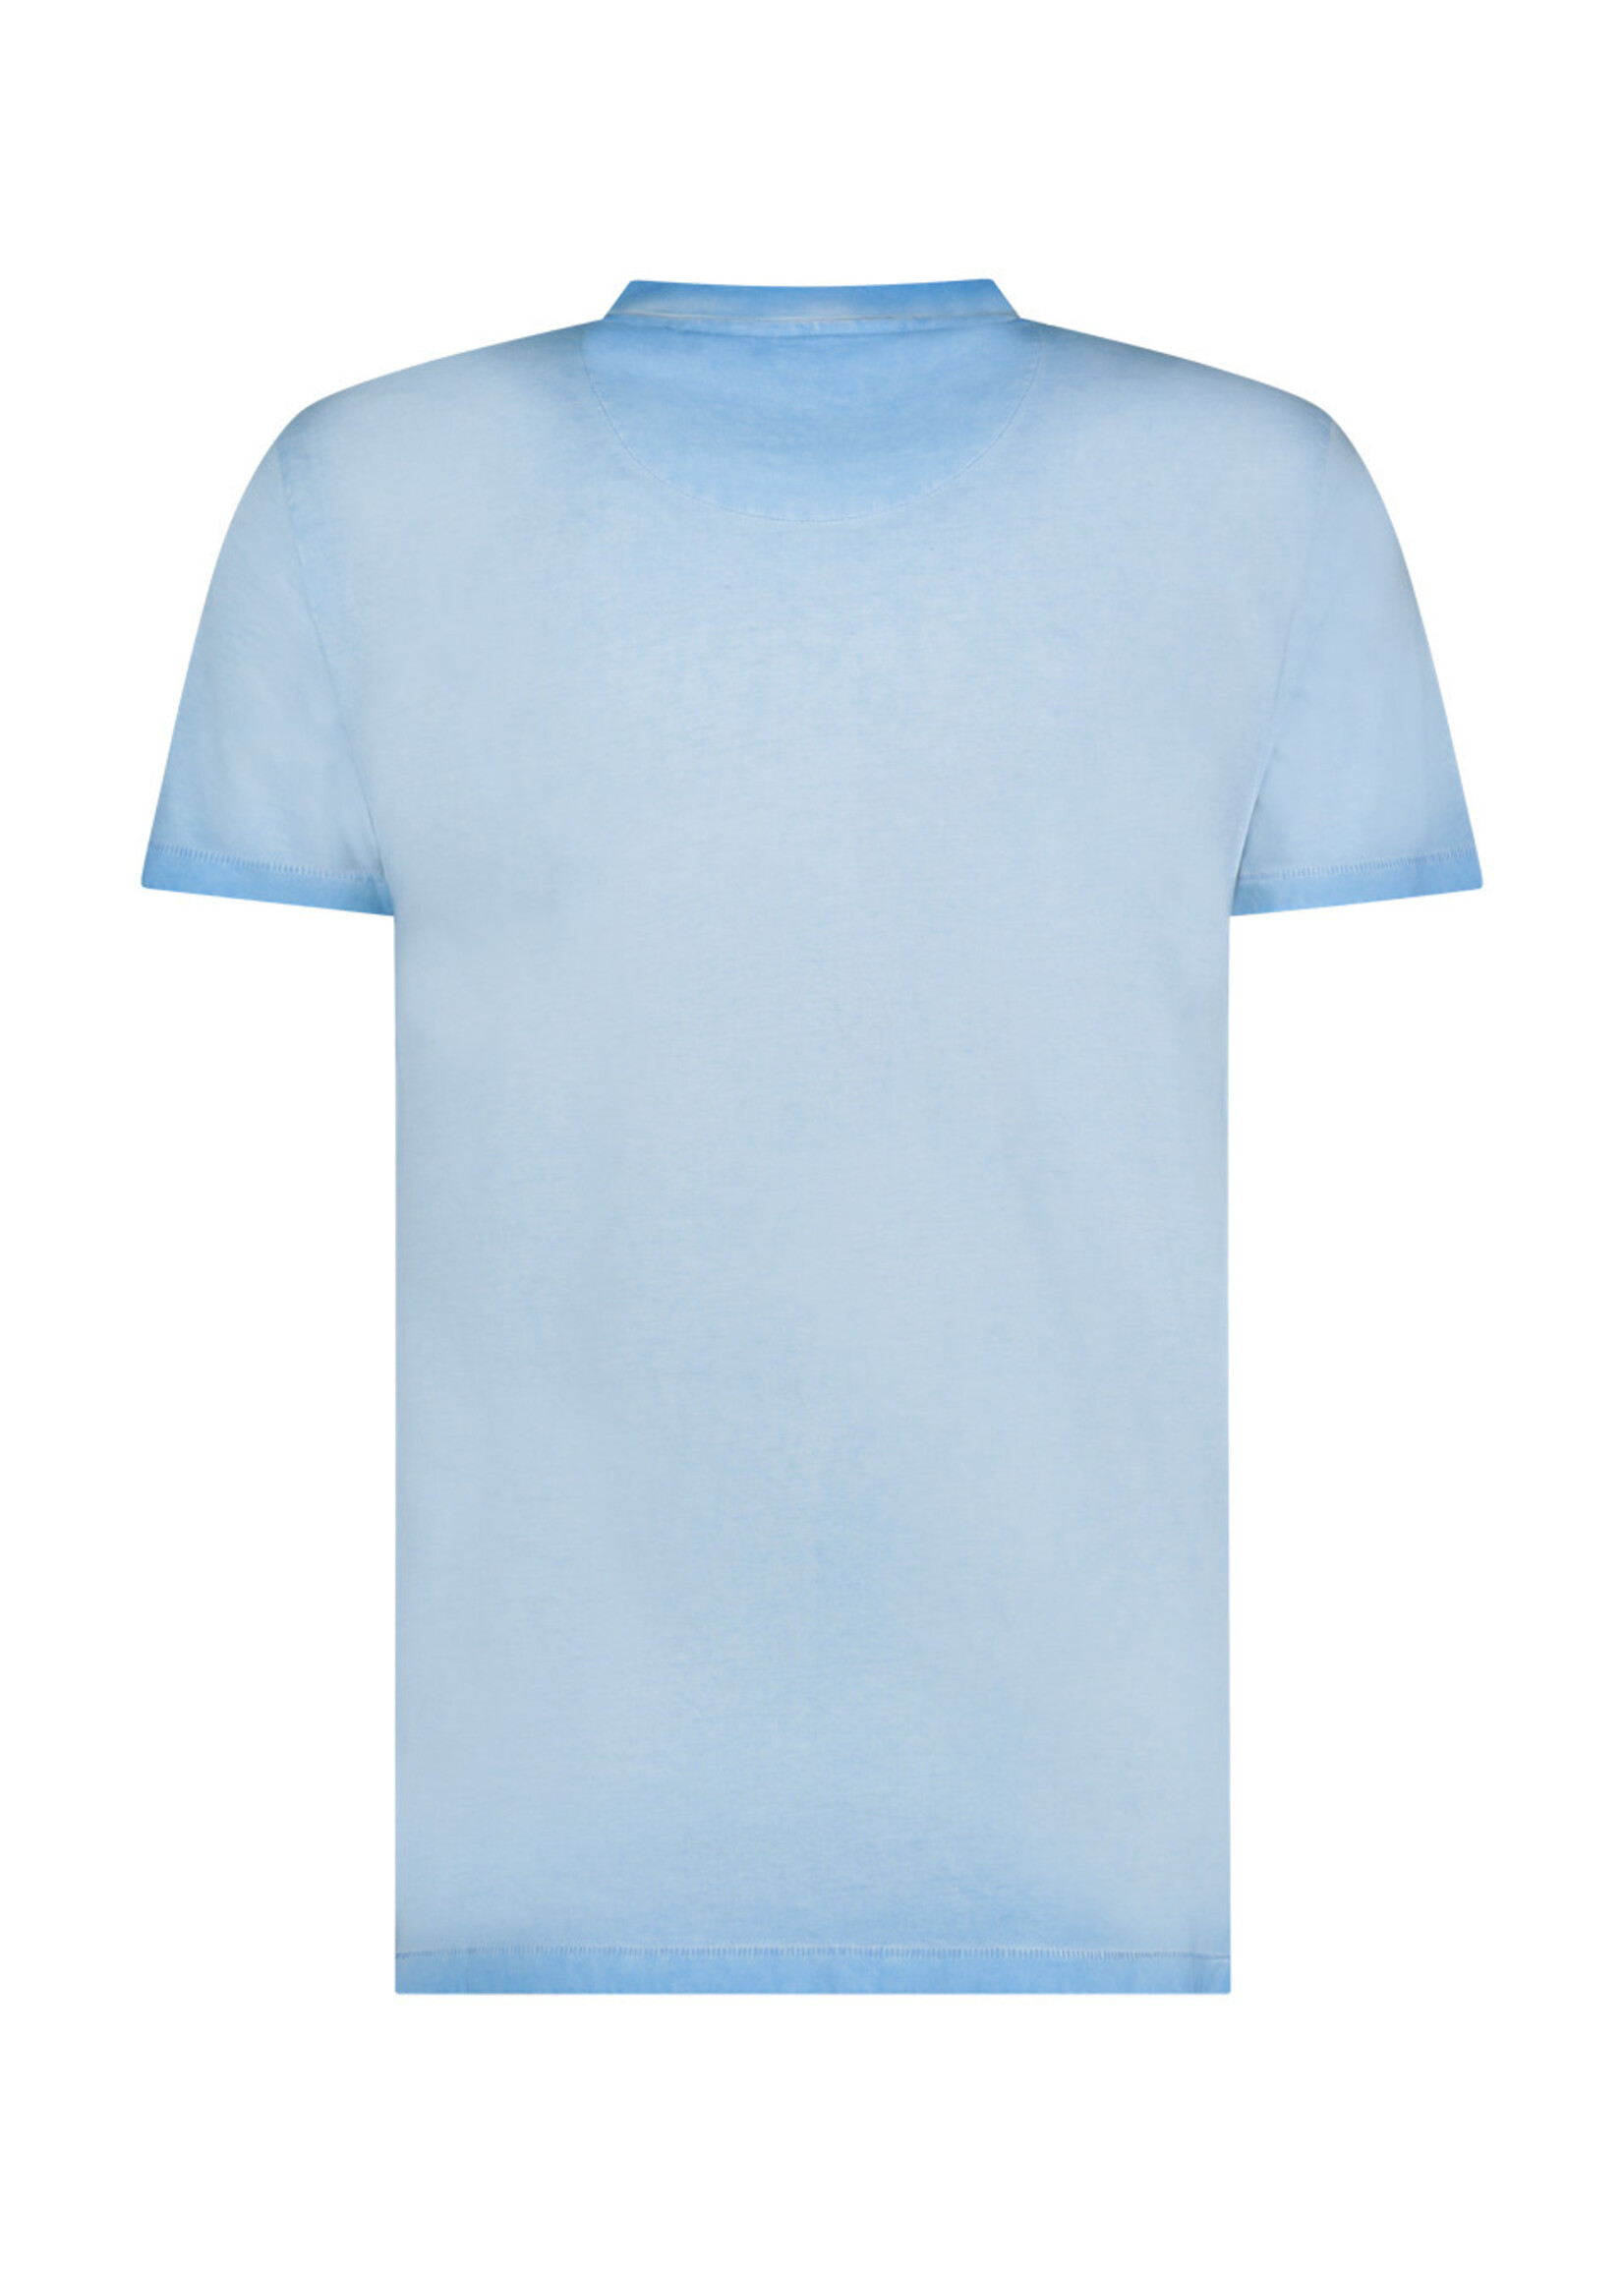 A FISH NAMED FRED T-shirt avec imprimé de voiture anglaise-Bleu ciel